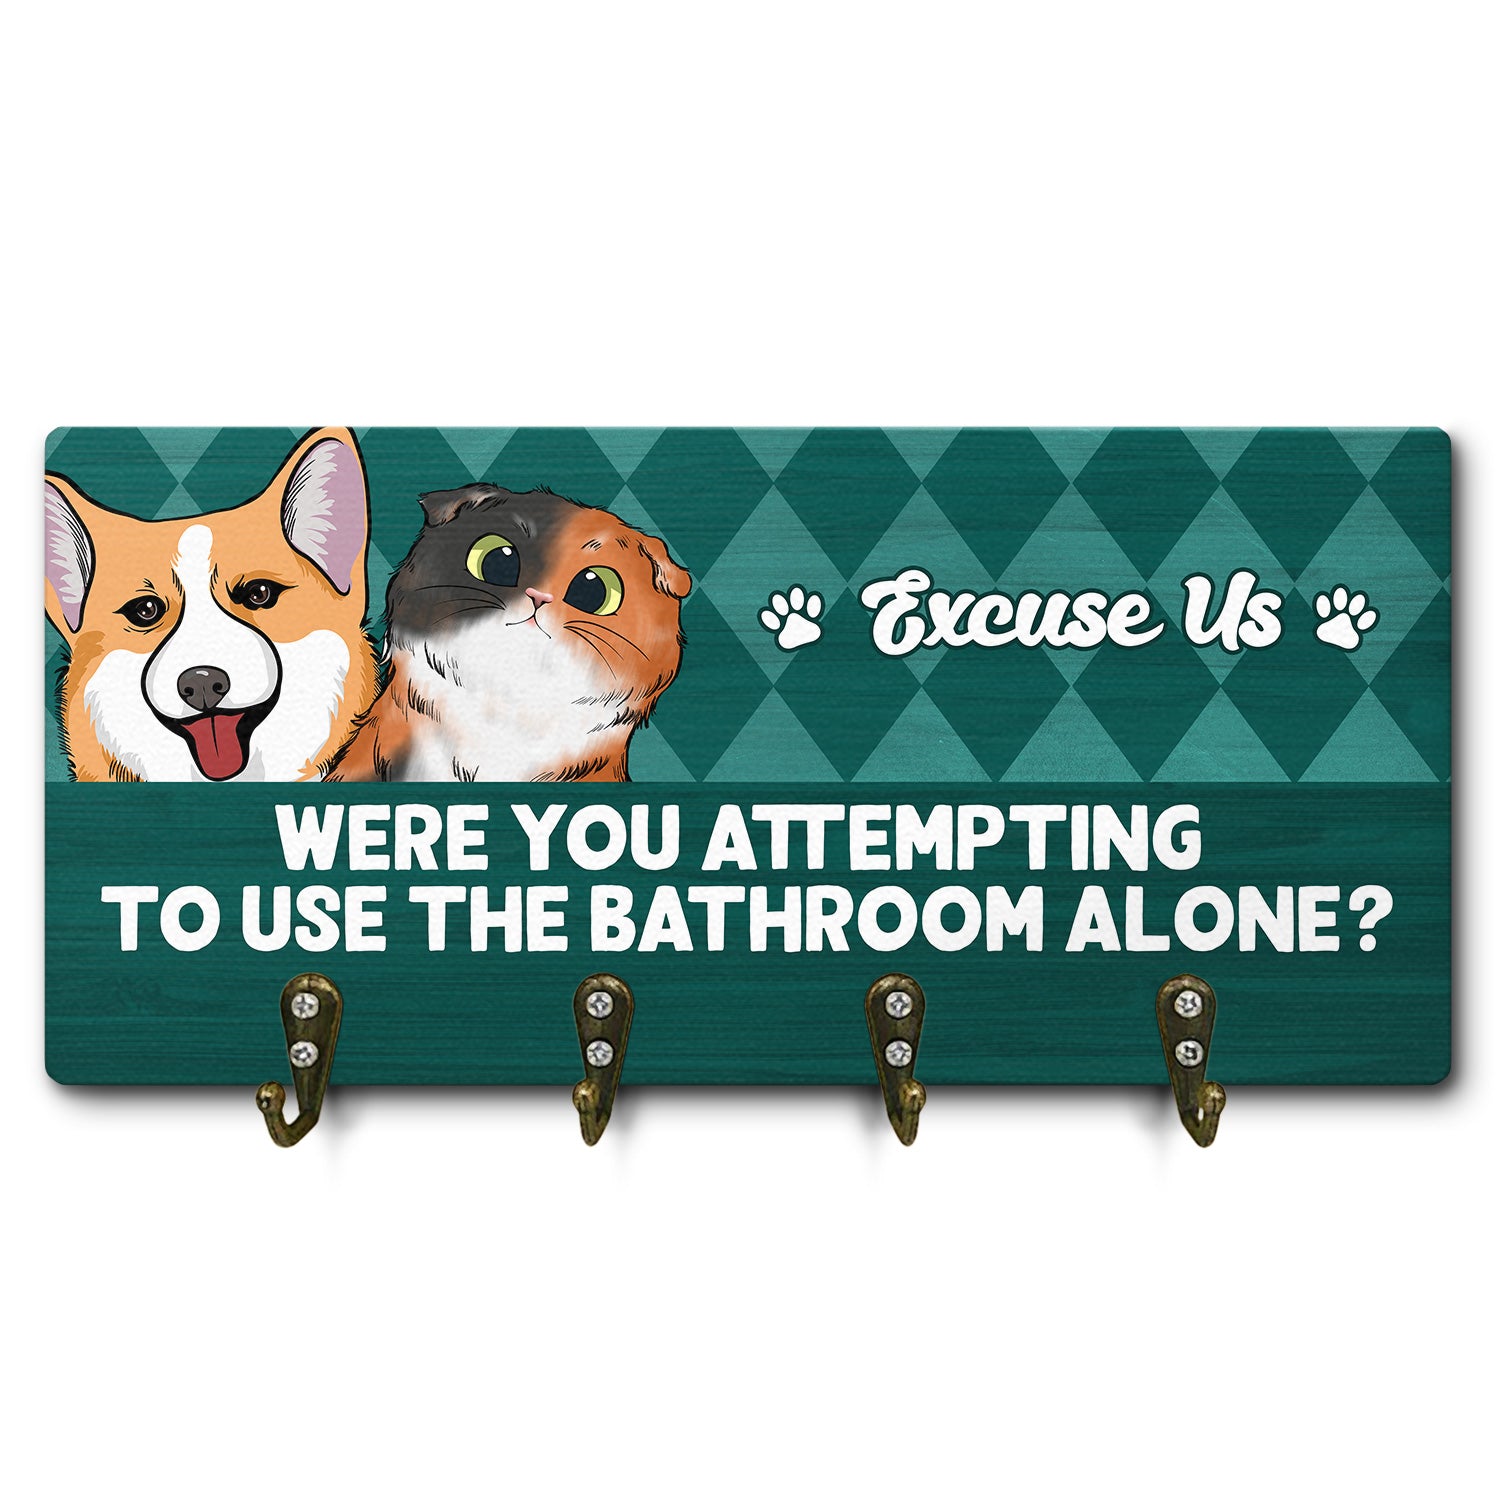 Use The Bathroom Alone - Bathroom Decor For Dog Mom, Dog Dad, Cat Mom, Cat Dad - Personalized Custom Wood Key Holder